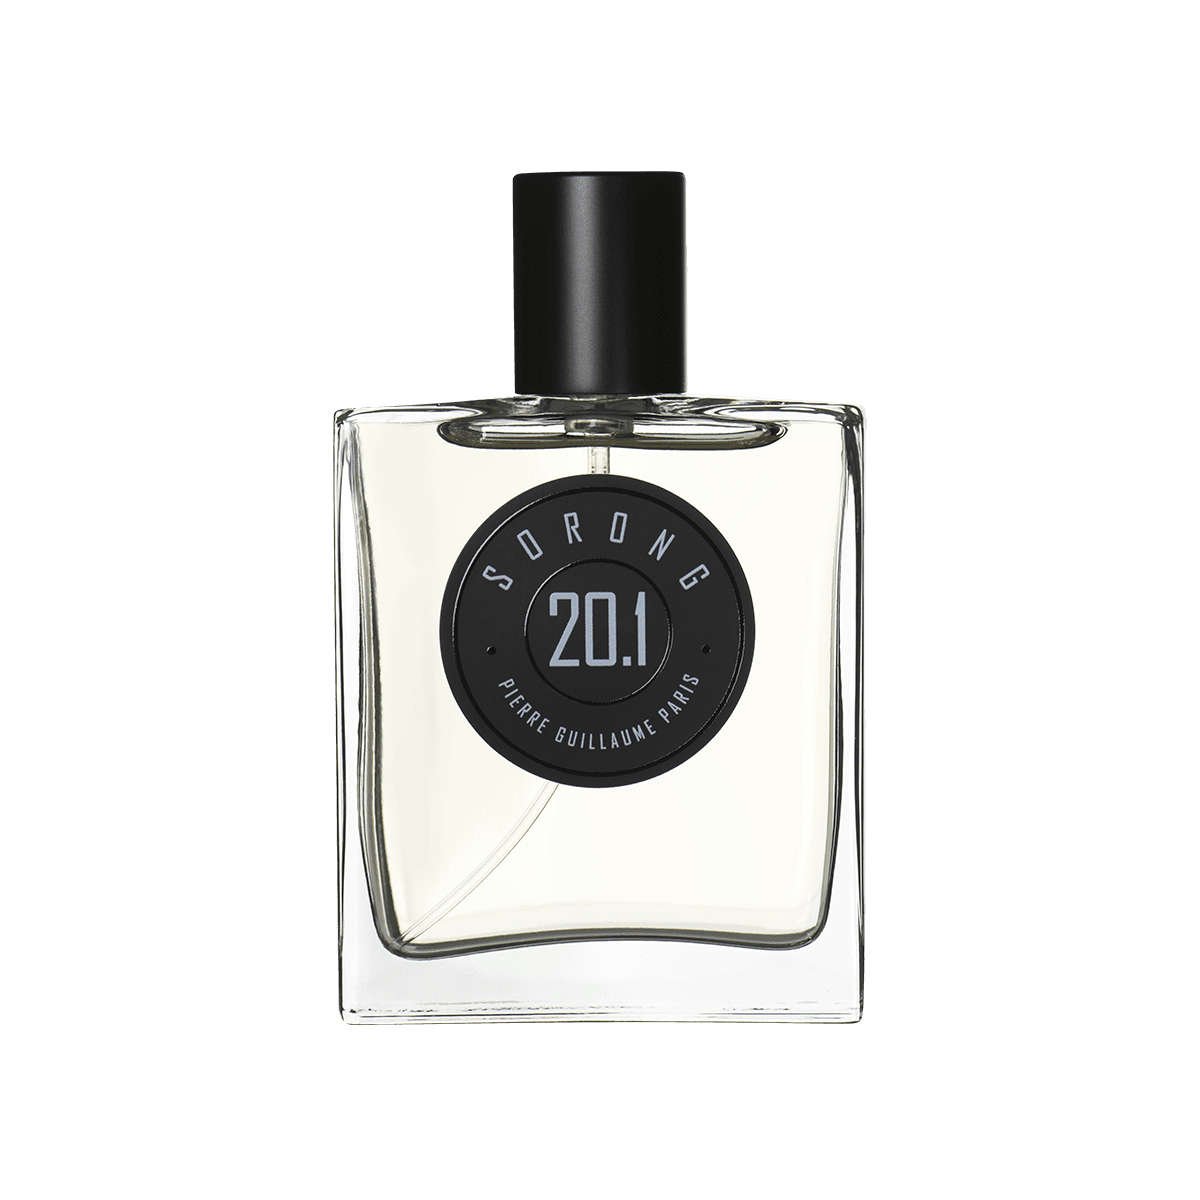 Pierre Guillaume Paris - 20.1 Sorong eau de parfum 50 ml | Perfume Lounge